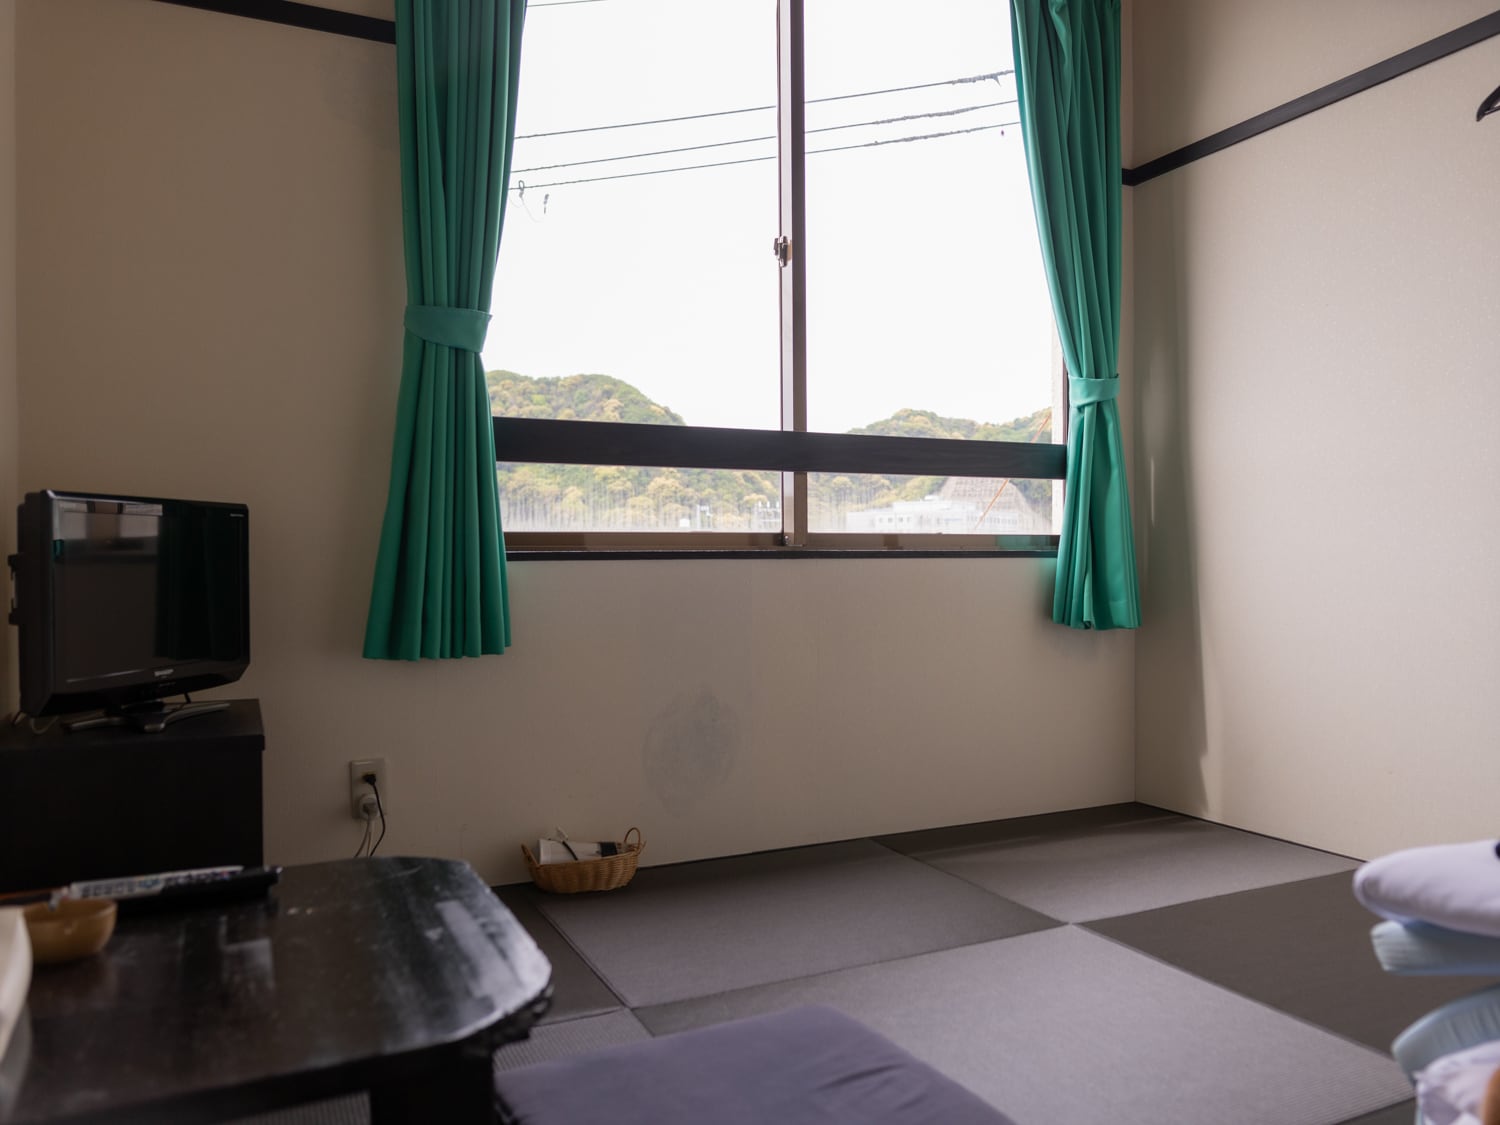 Japanese-style room 4.5 tatami